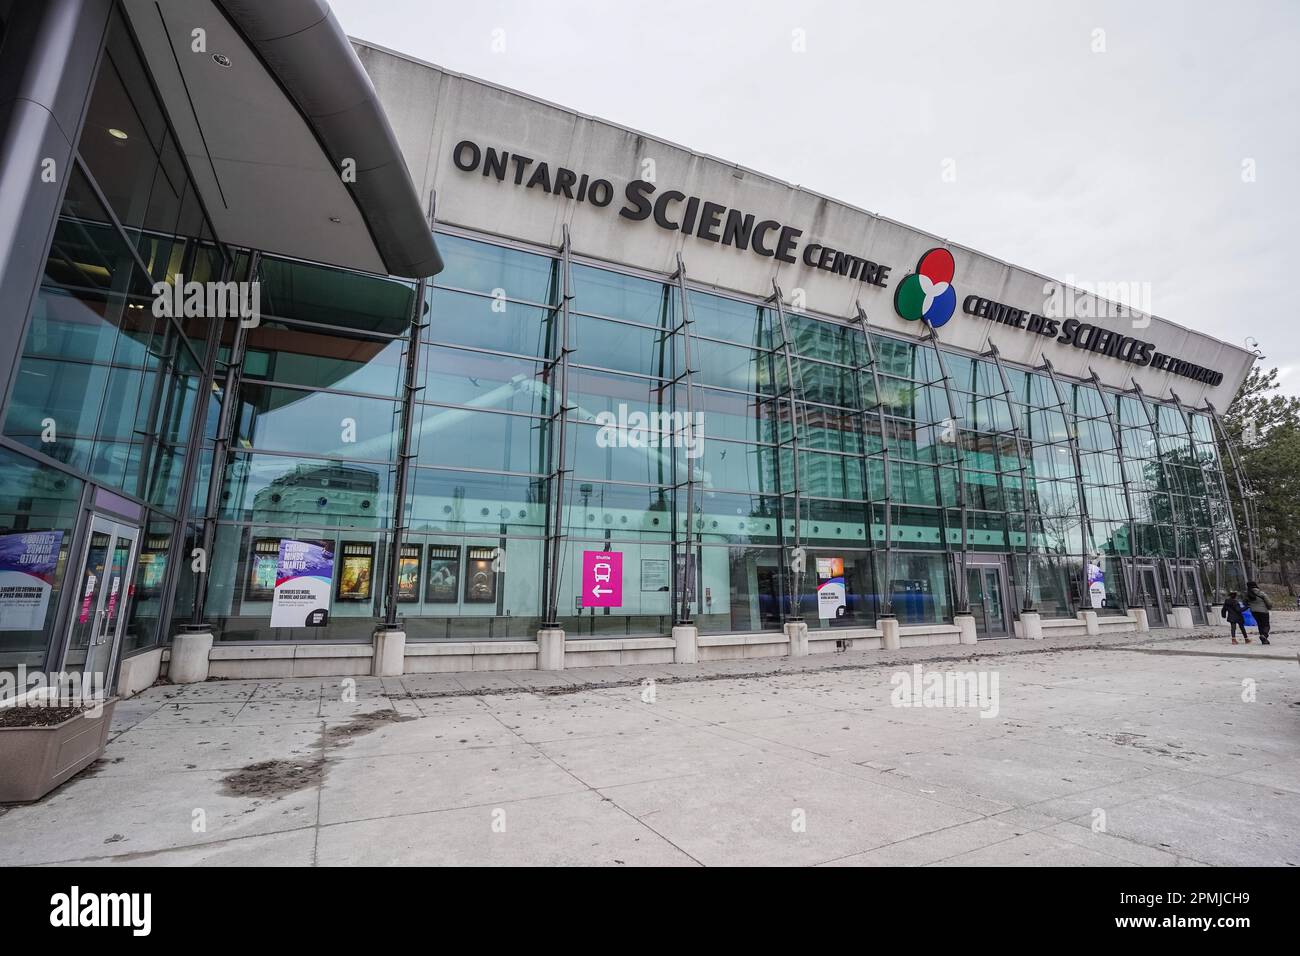 Ontario science centre exterior, Toronto, Ontario, Canada Stock Photo